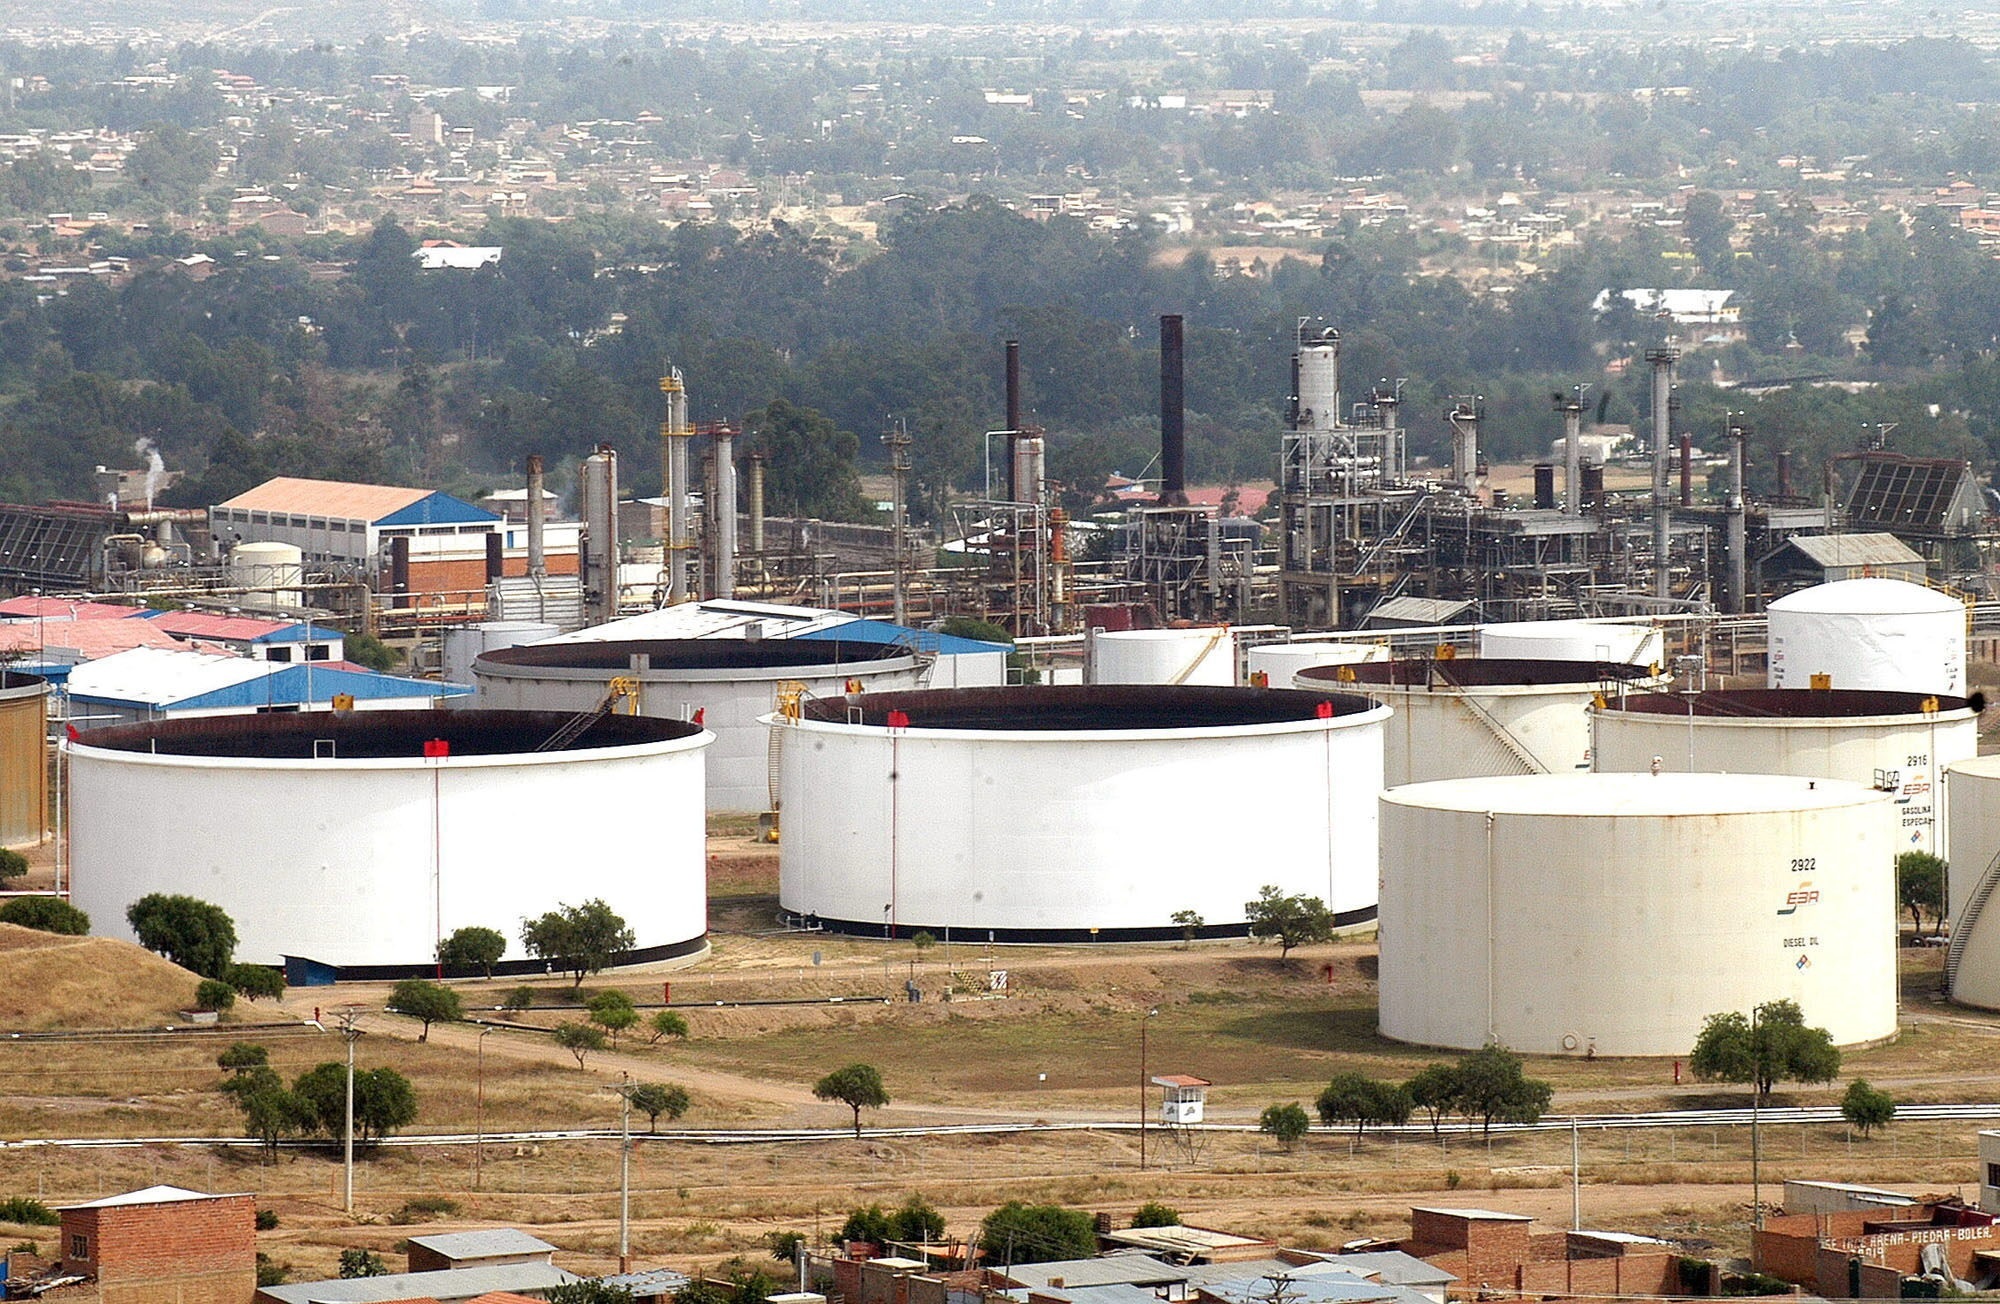 Yacimientos Petrolíferos Fiscales Bolivianos (EFE/Jorge Abrego/Archivo)